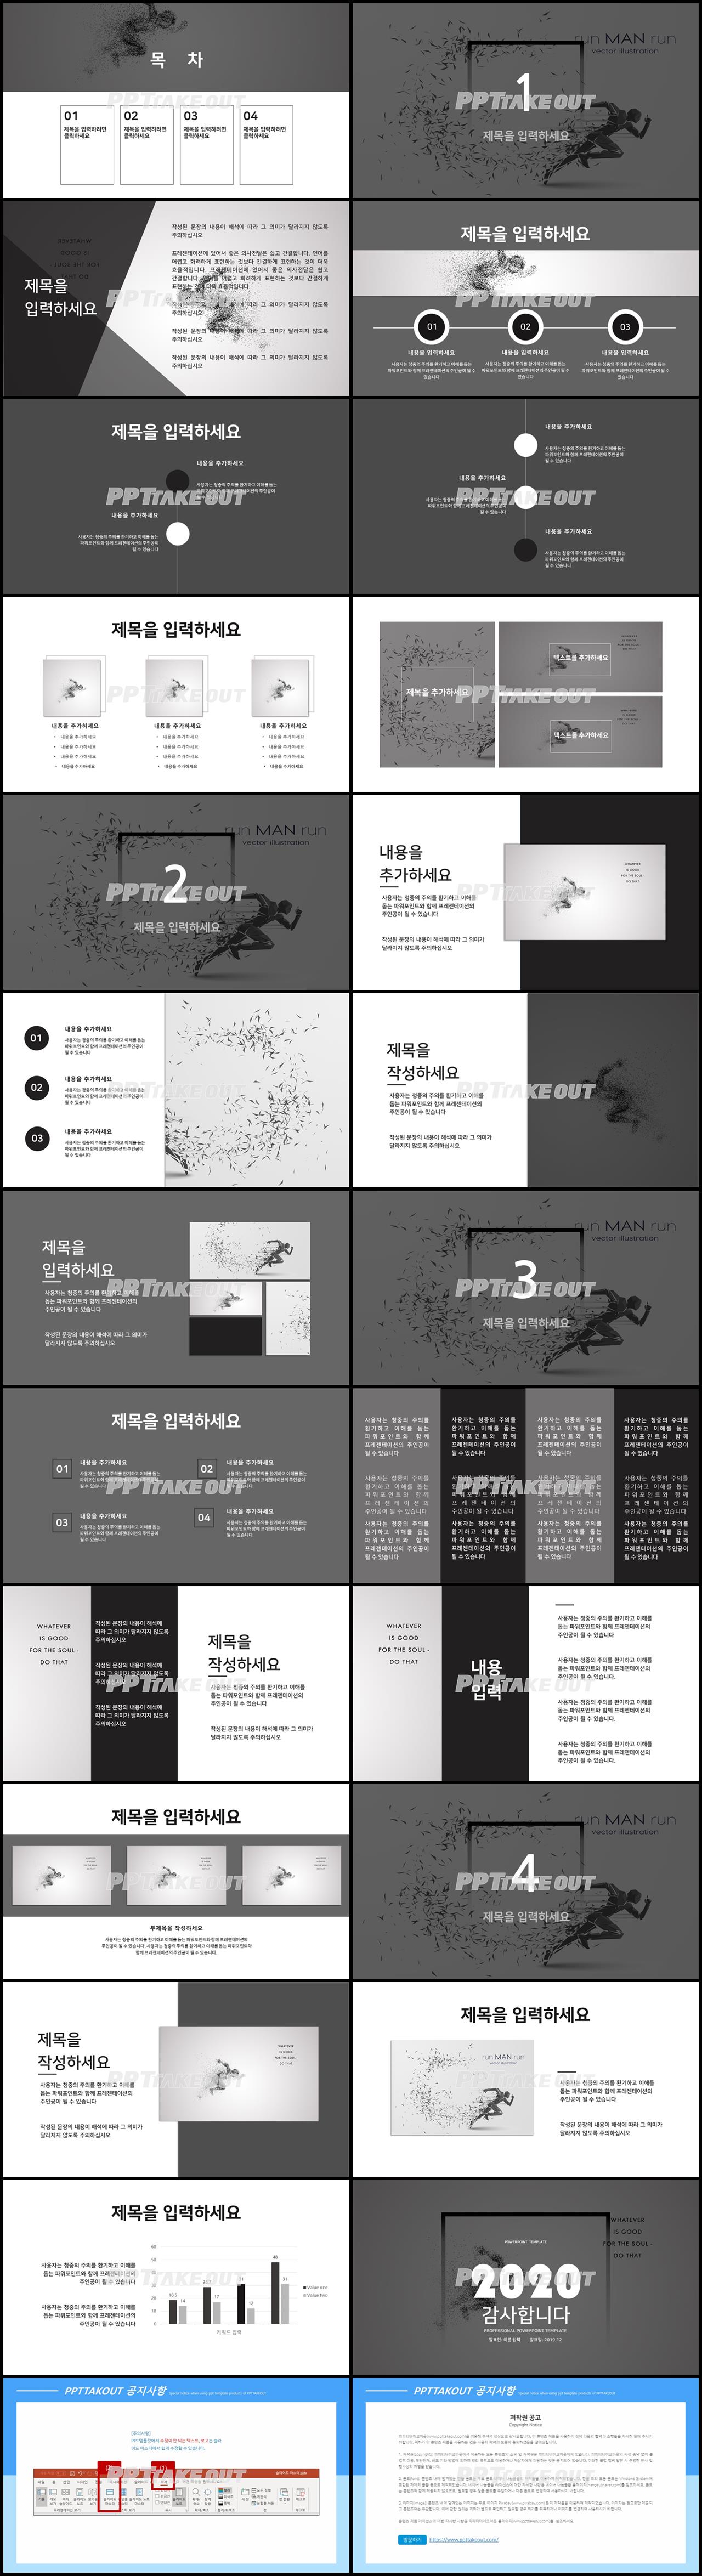 금융투자 검은색 다크한 고퀄리티 POWERPOINT배경 제작 상세보기